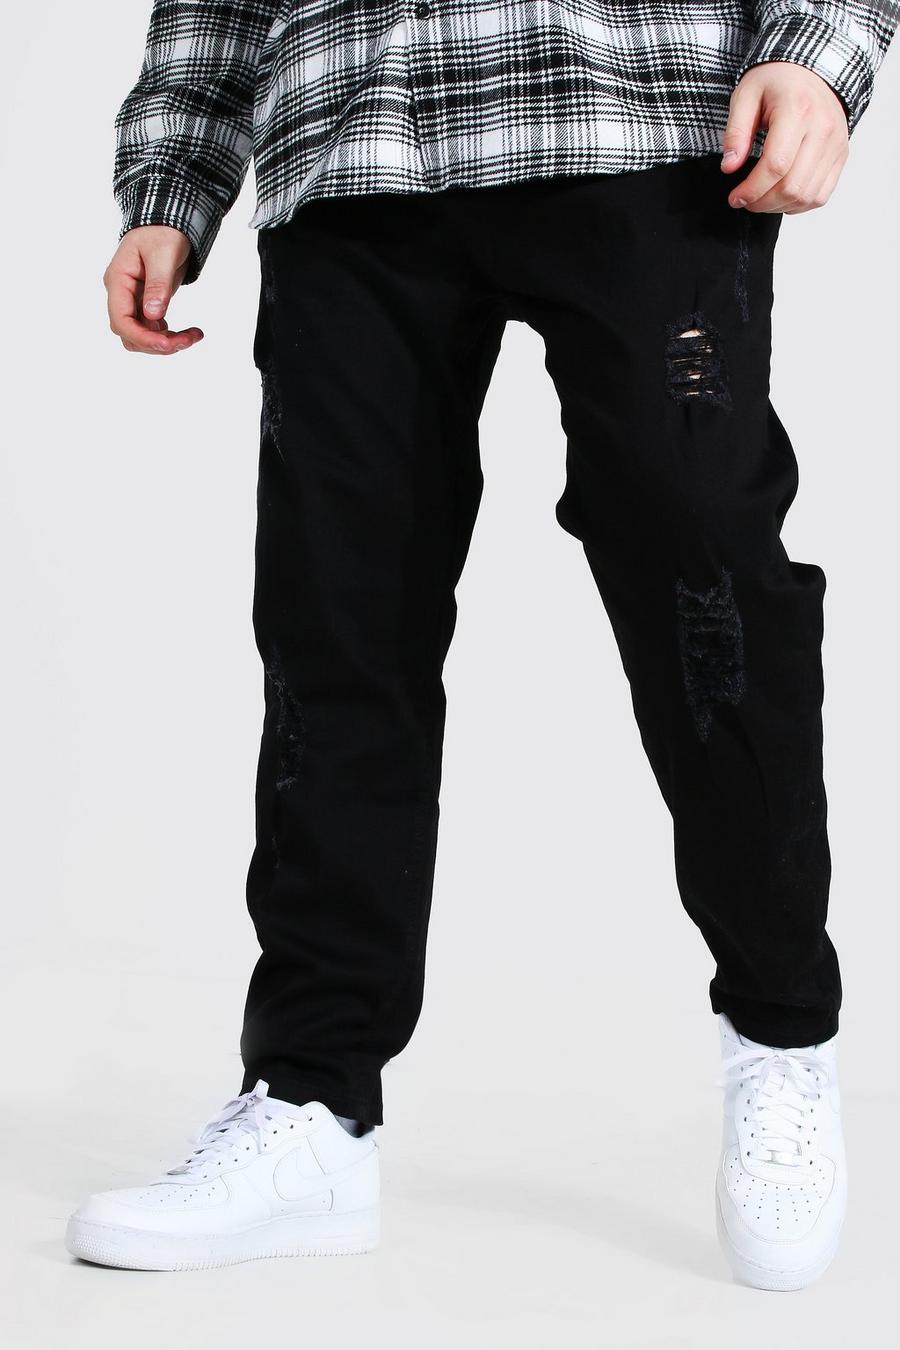 שחור סקיני ג'ינס עם קרעים מרובים לגברים גדולים וגבוהים image number 1